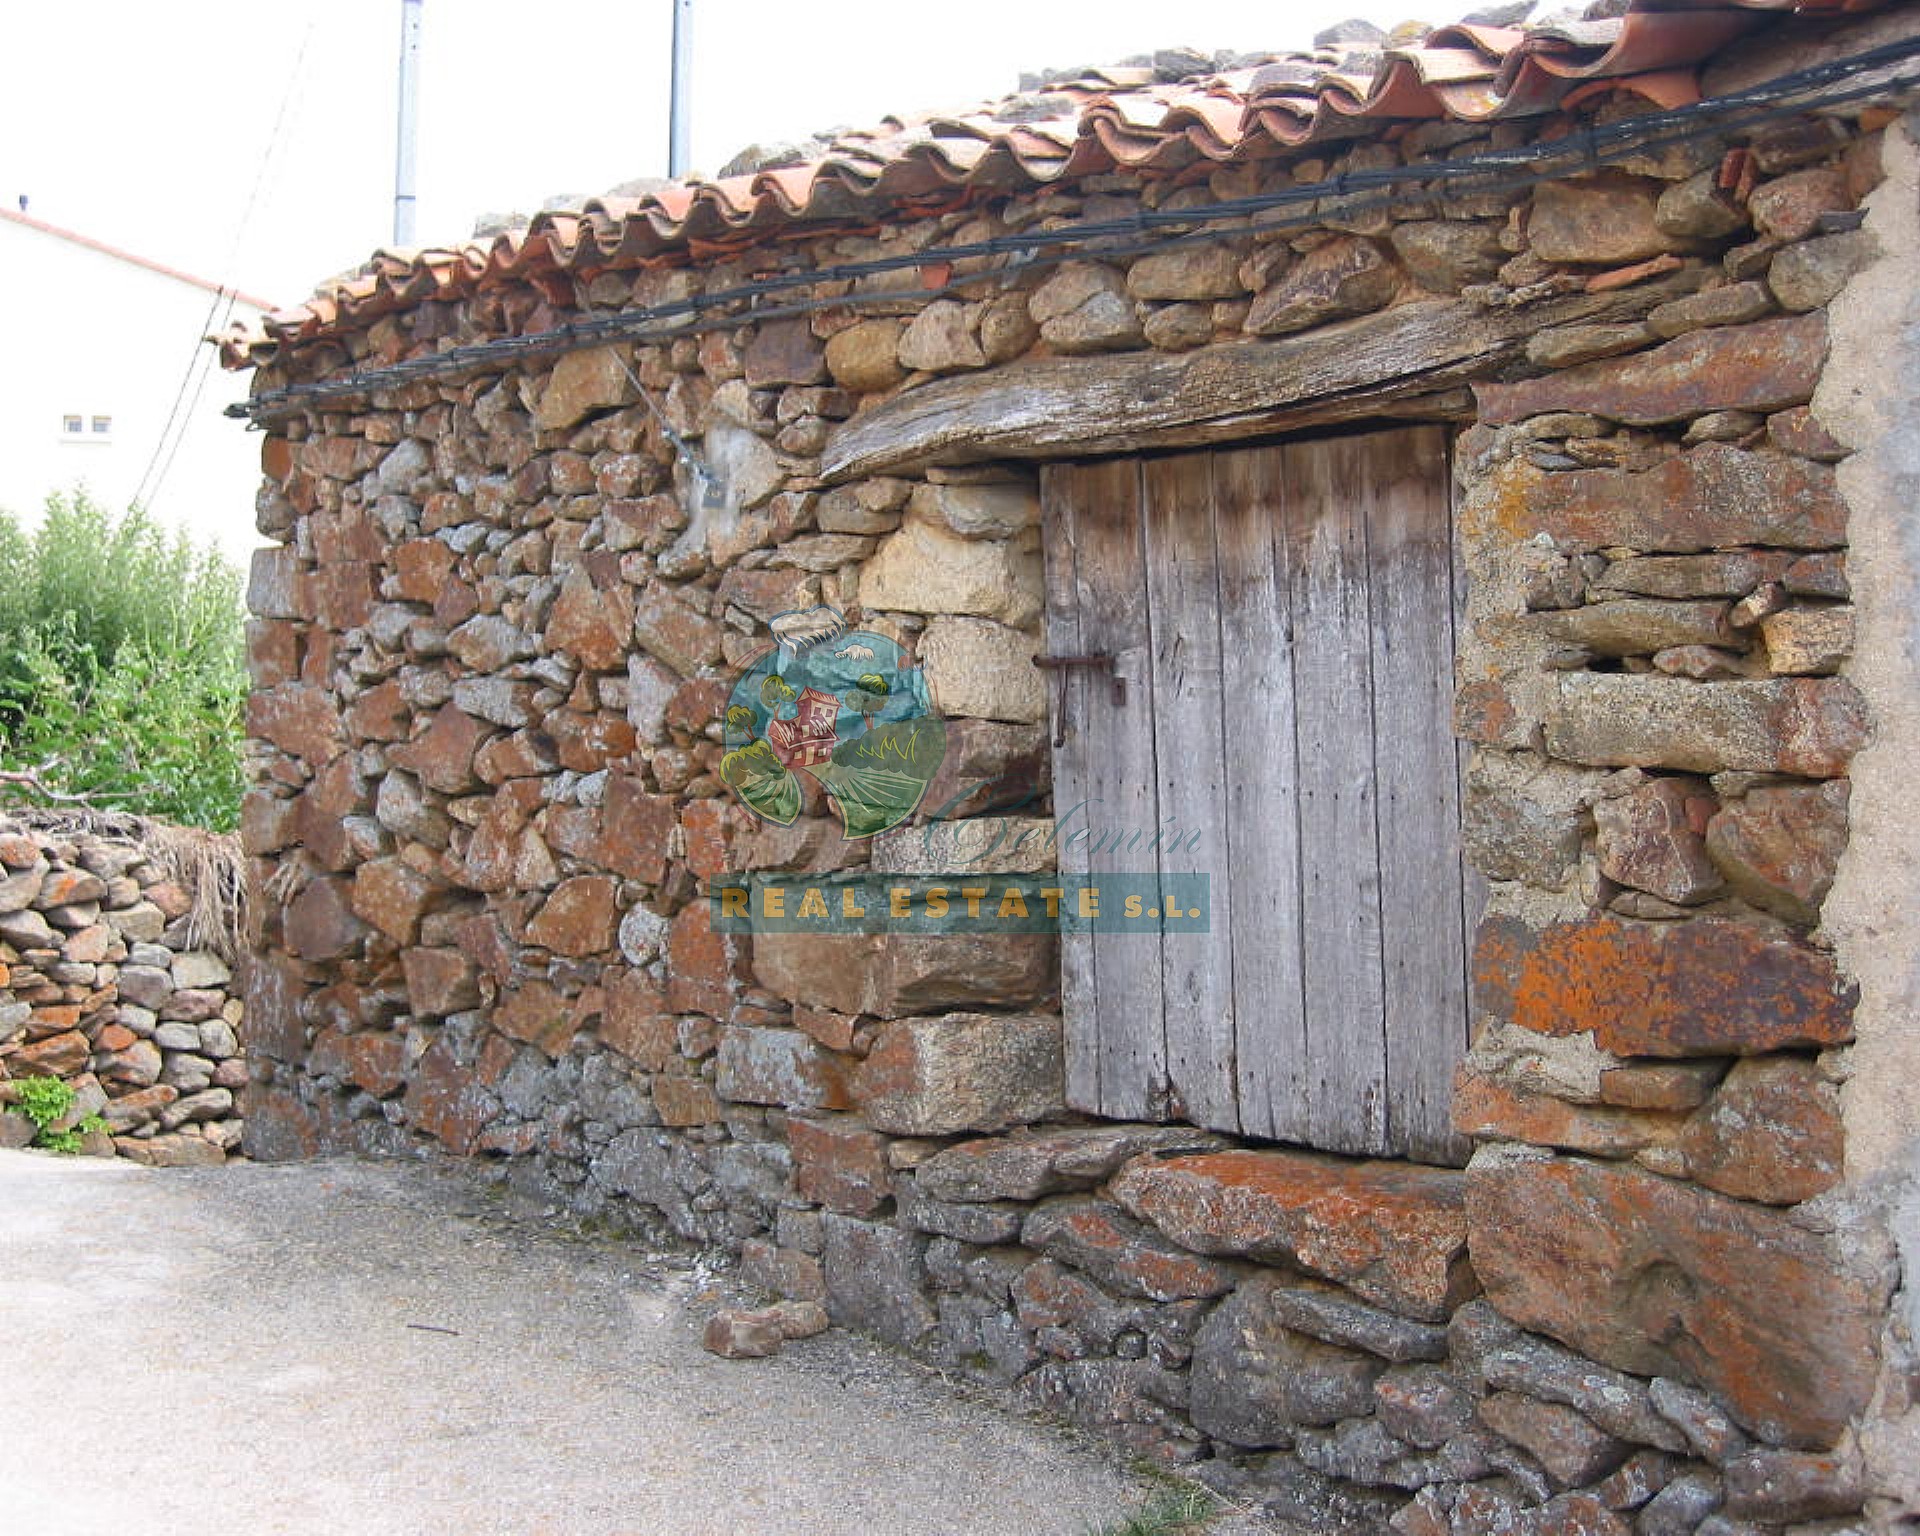 Cuadra y corral con vistas en Sierra de Gredos.